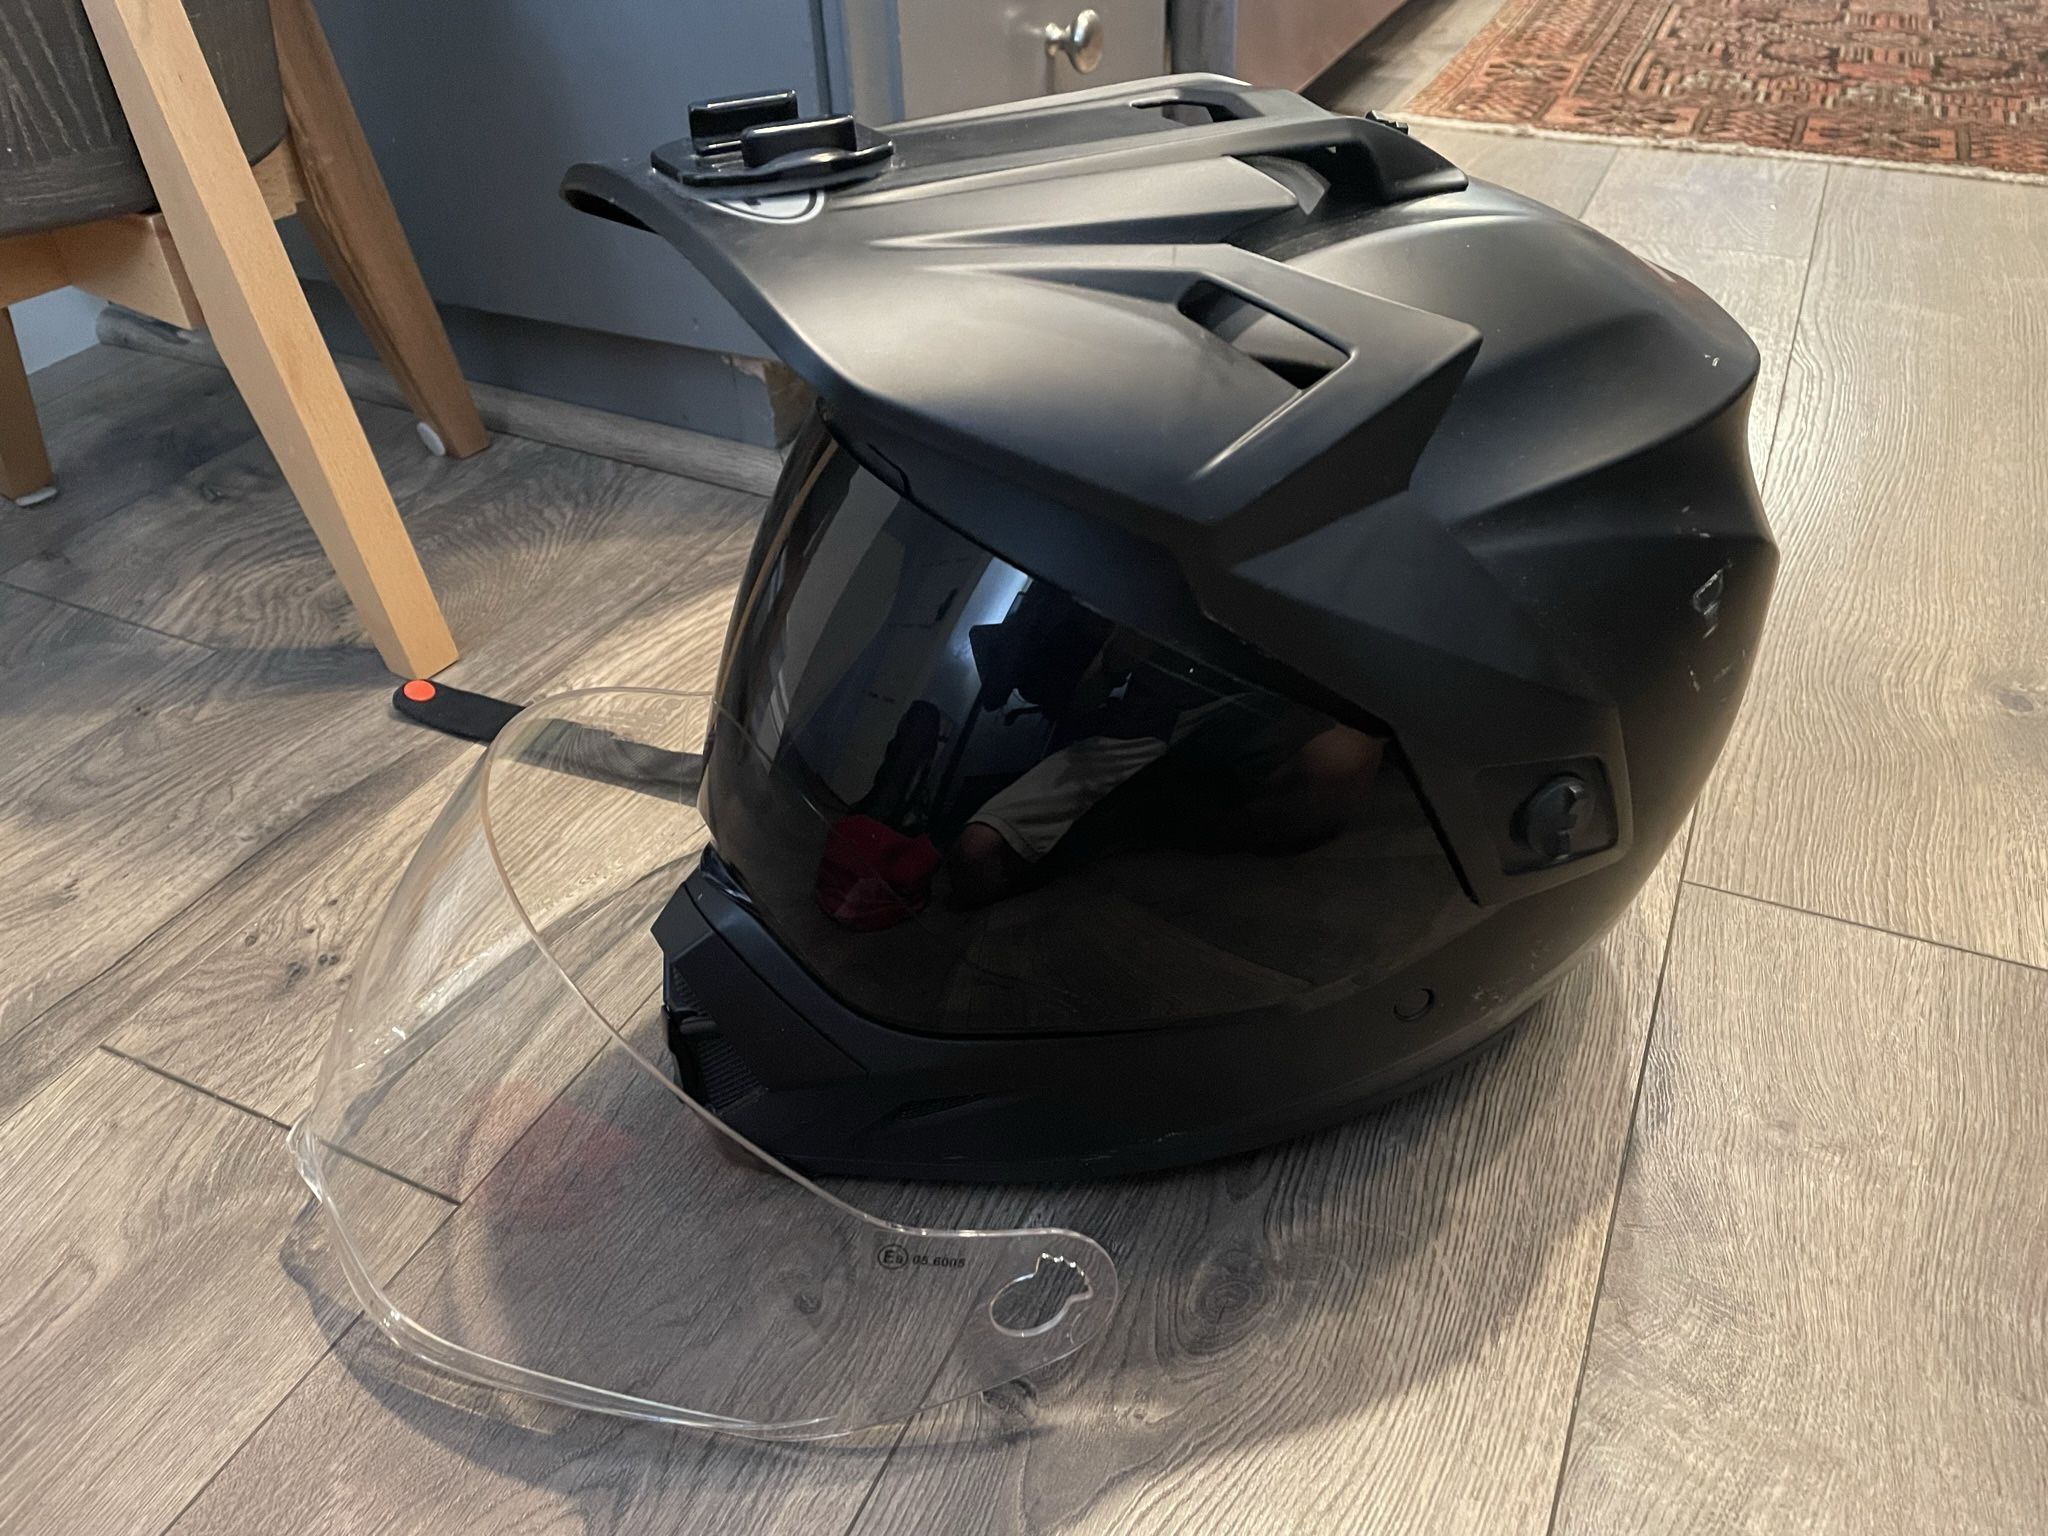 MX-9 Adventure Helmet (Size: M)